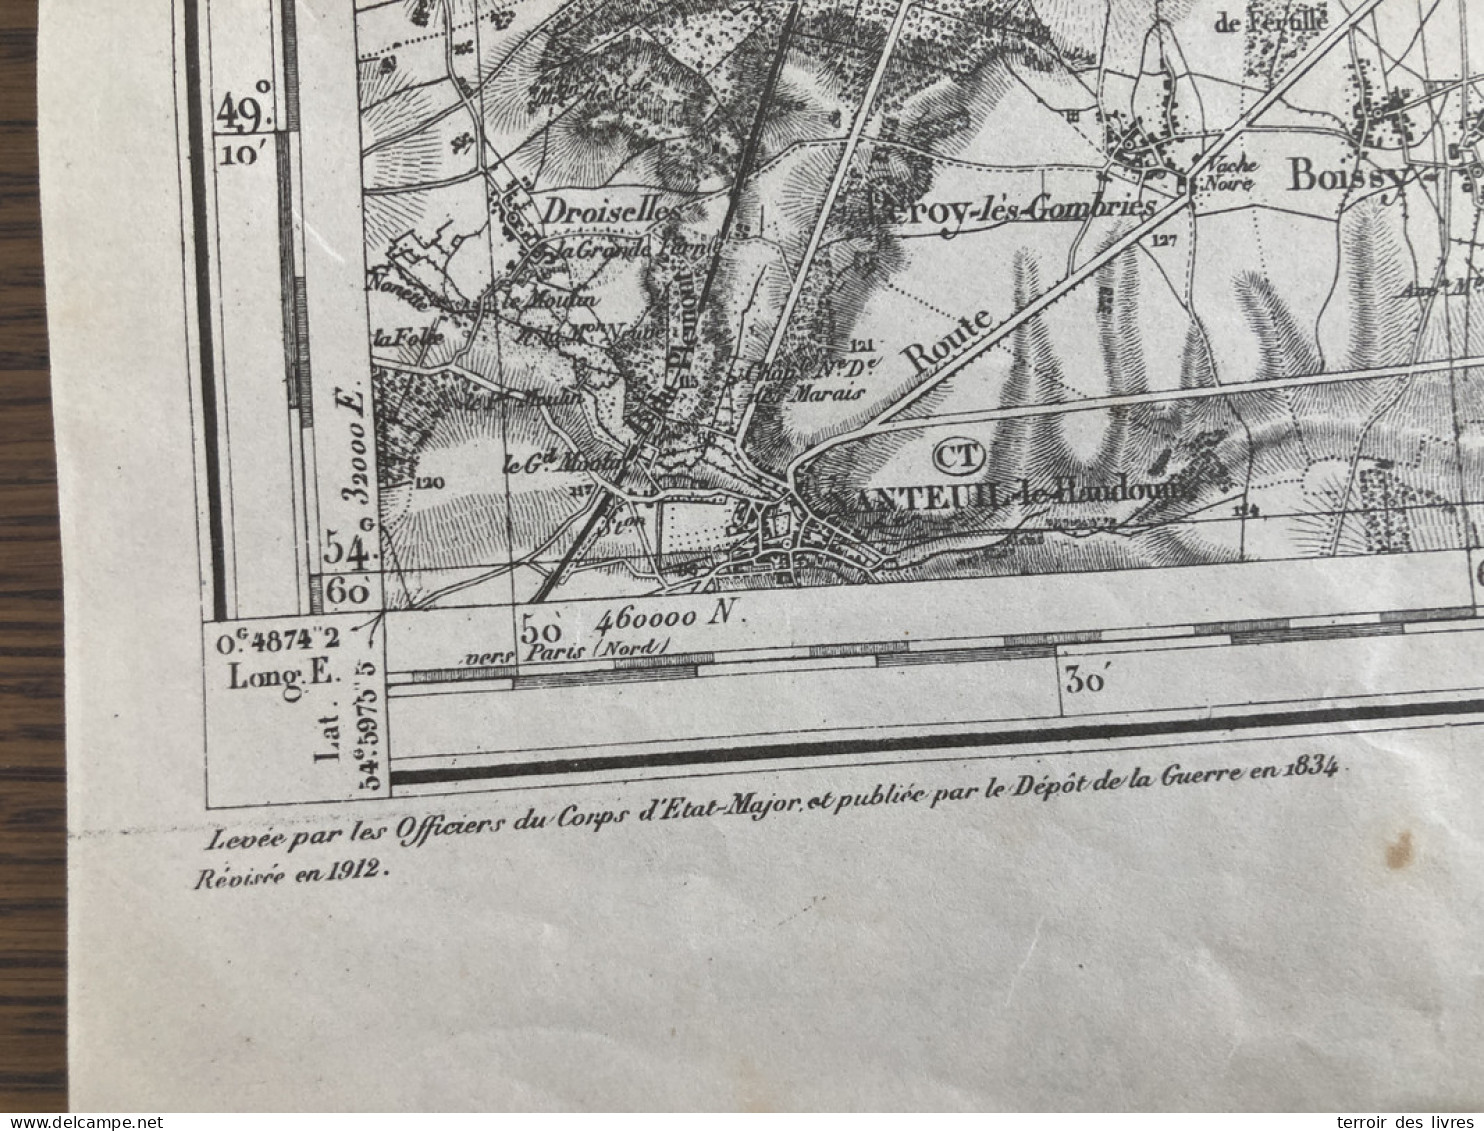 Carte état Major SOISSONS 33 1834 1912 60x86cm SAINT PIERRE AIGLE DOMMIERS CUTRY COEUVRES-ET-VALSERY MONTGOBERT LAVERSIN - Carte Geographique